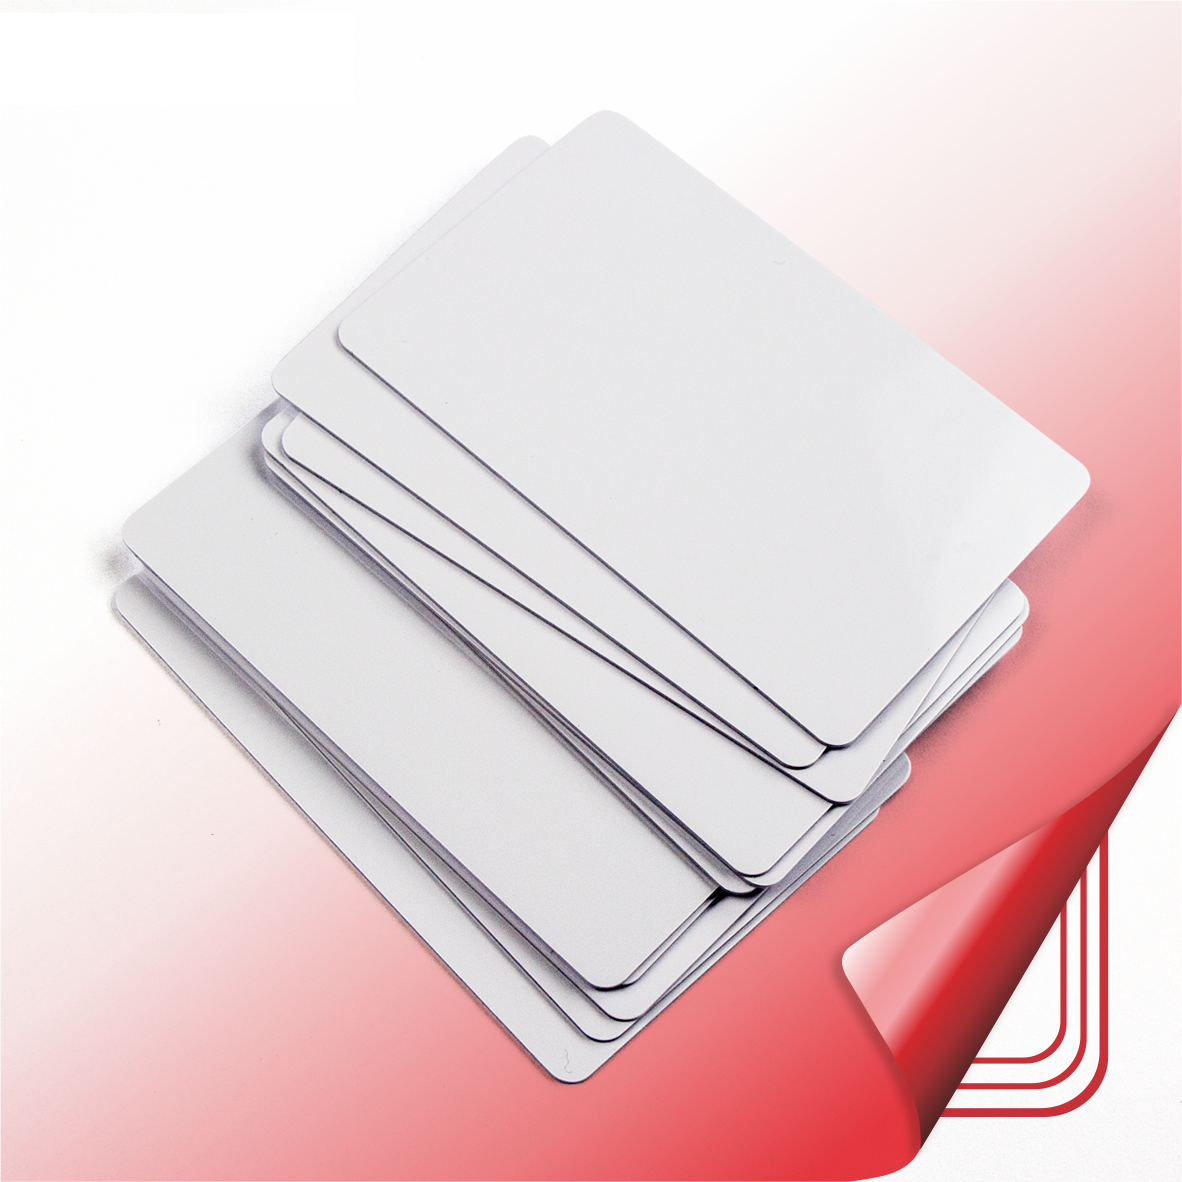 CR80 بطاقة بلاستيكية بيضاء فارغة قابلة للطباعة PVC مع شريحة لبطاقة التحكم في الوصول إلى مفتاح الفندق